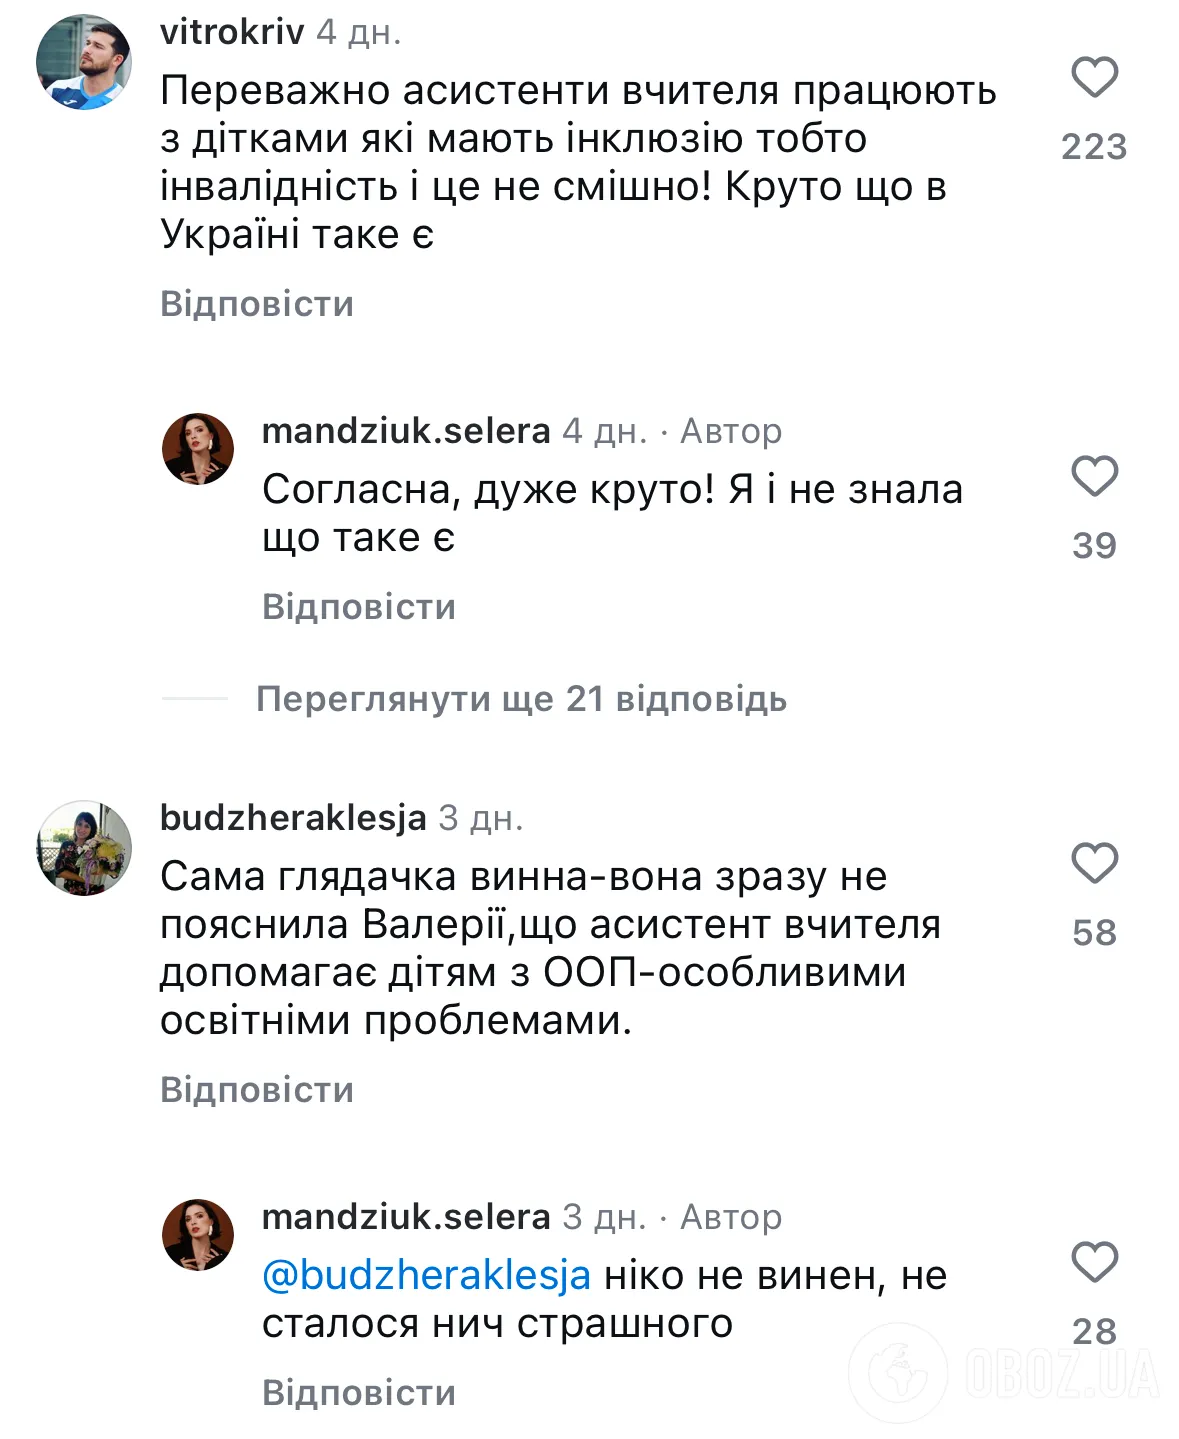 Лера Мандзюк попала в скандал из-за шутки о "тупеньких детях". Родители поставили украинскую юмористку на место